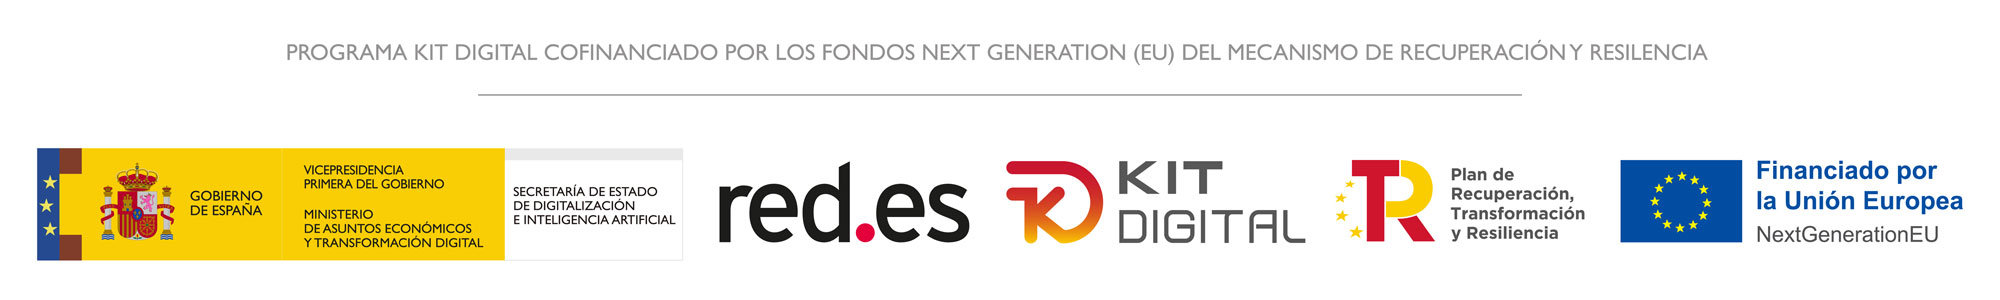 kit digital logo digitalizadores